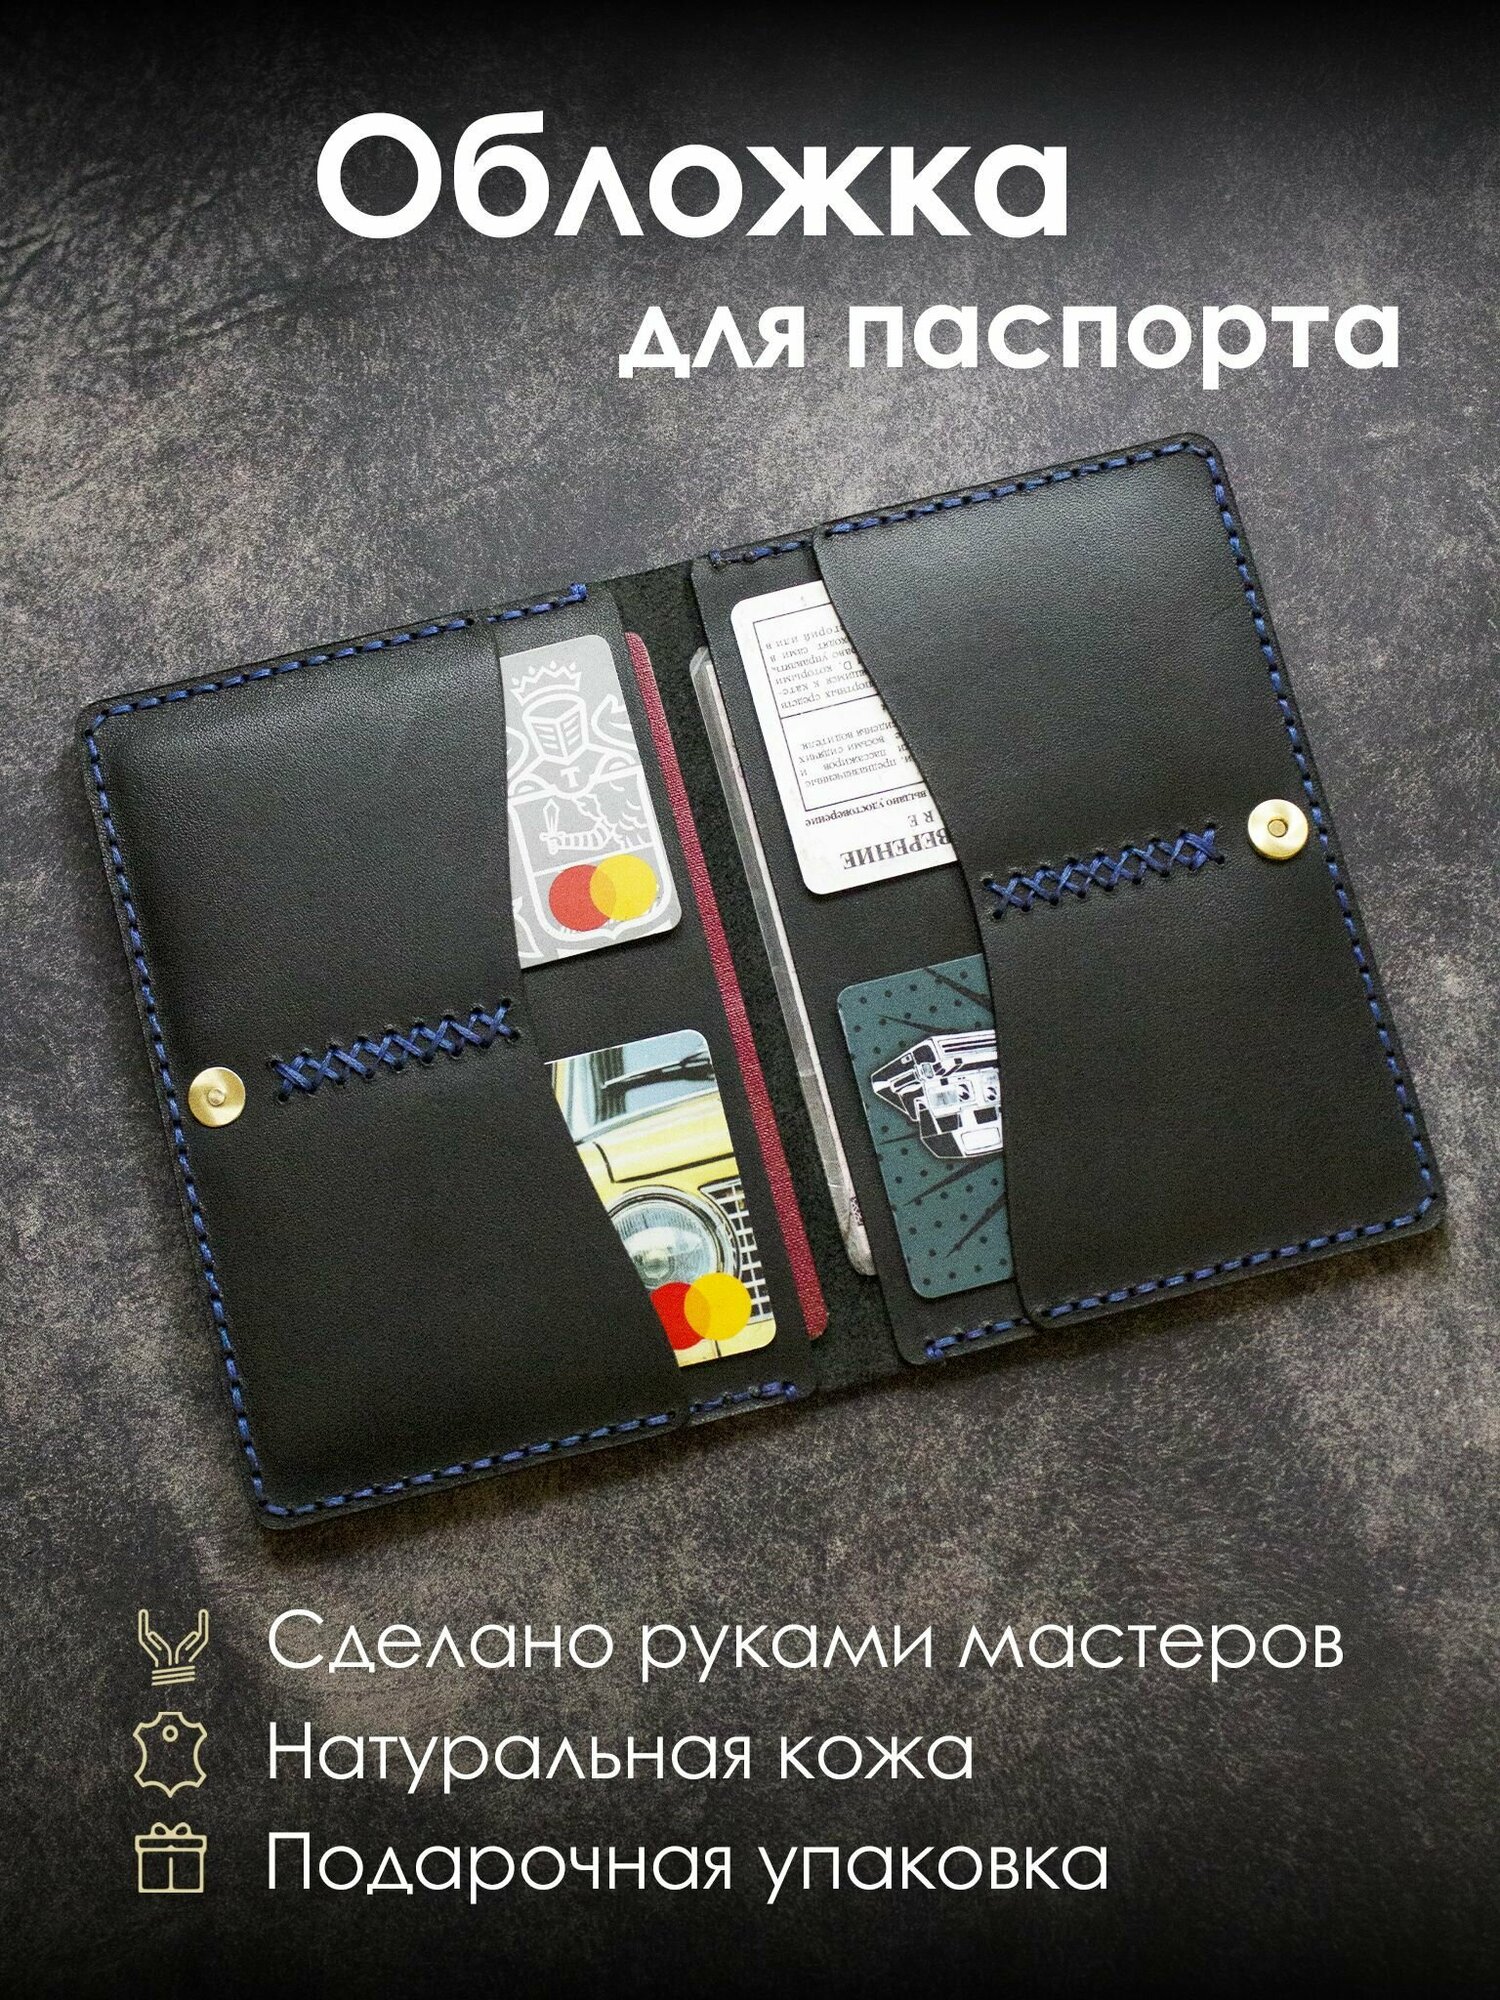 Обложка для паспорта Обложка для паспорта и других документов на магните KOVACH 